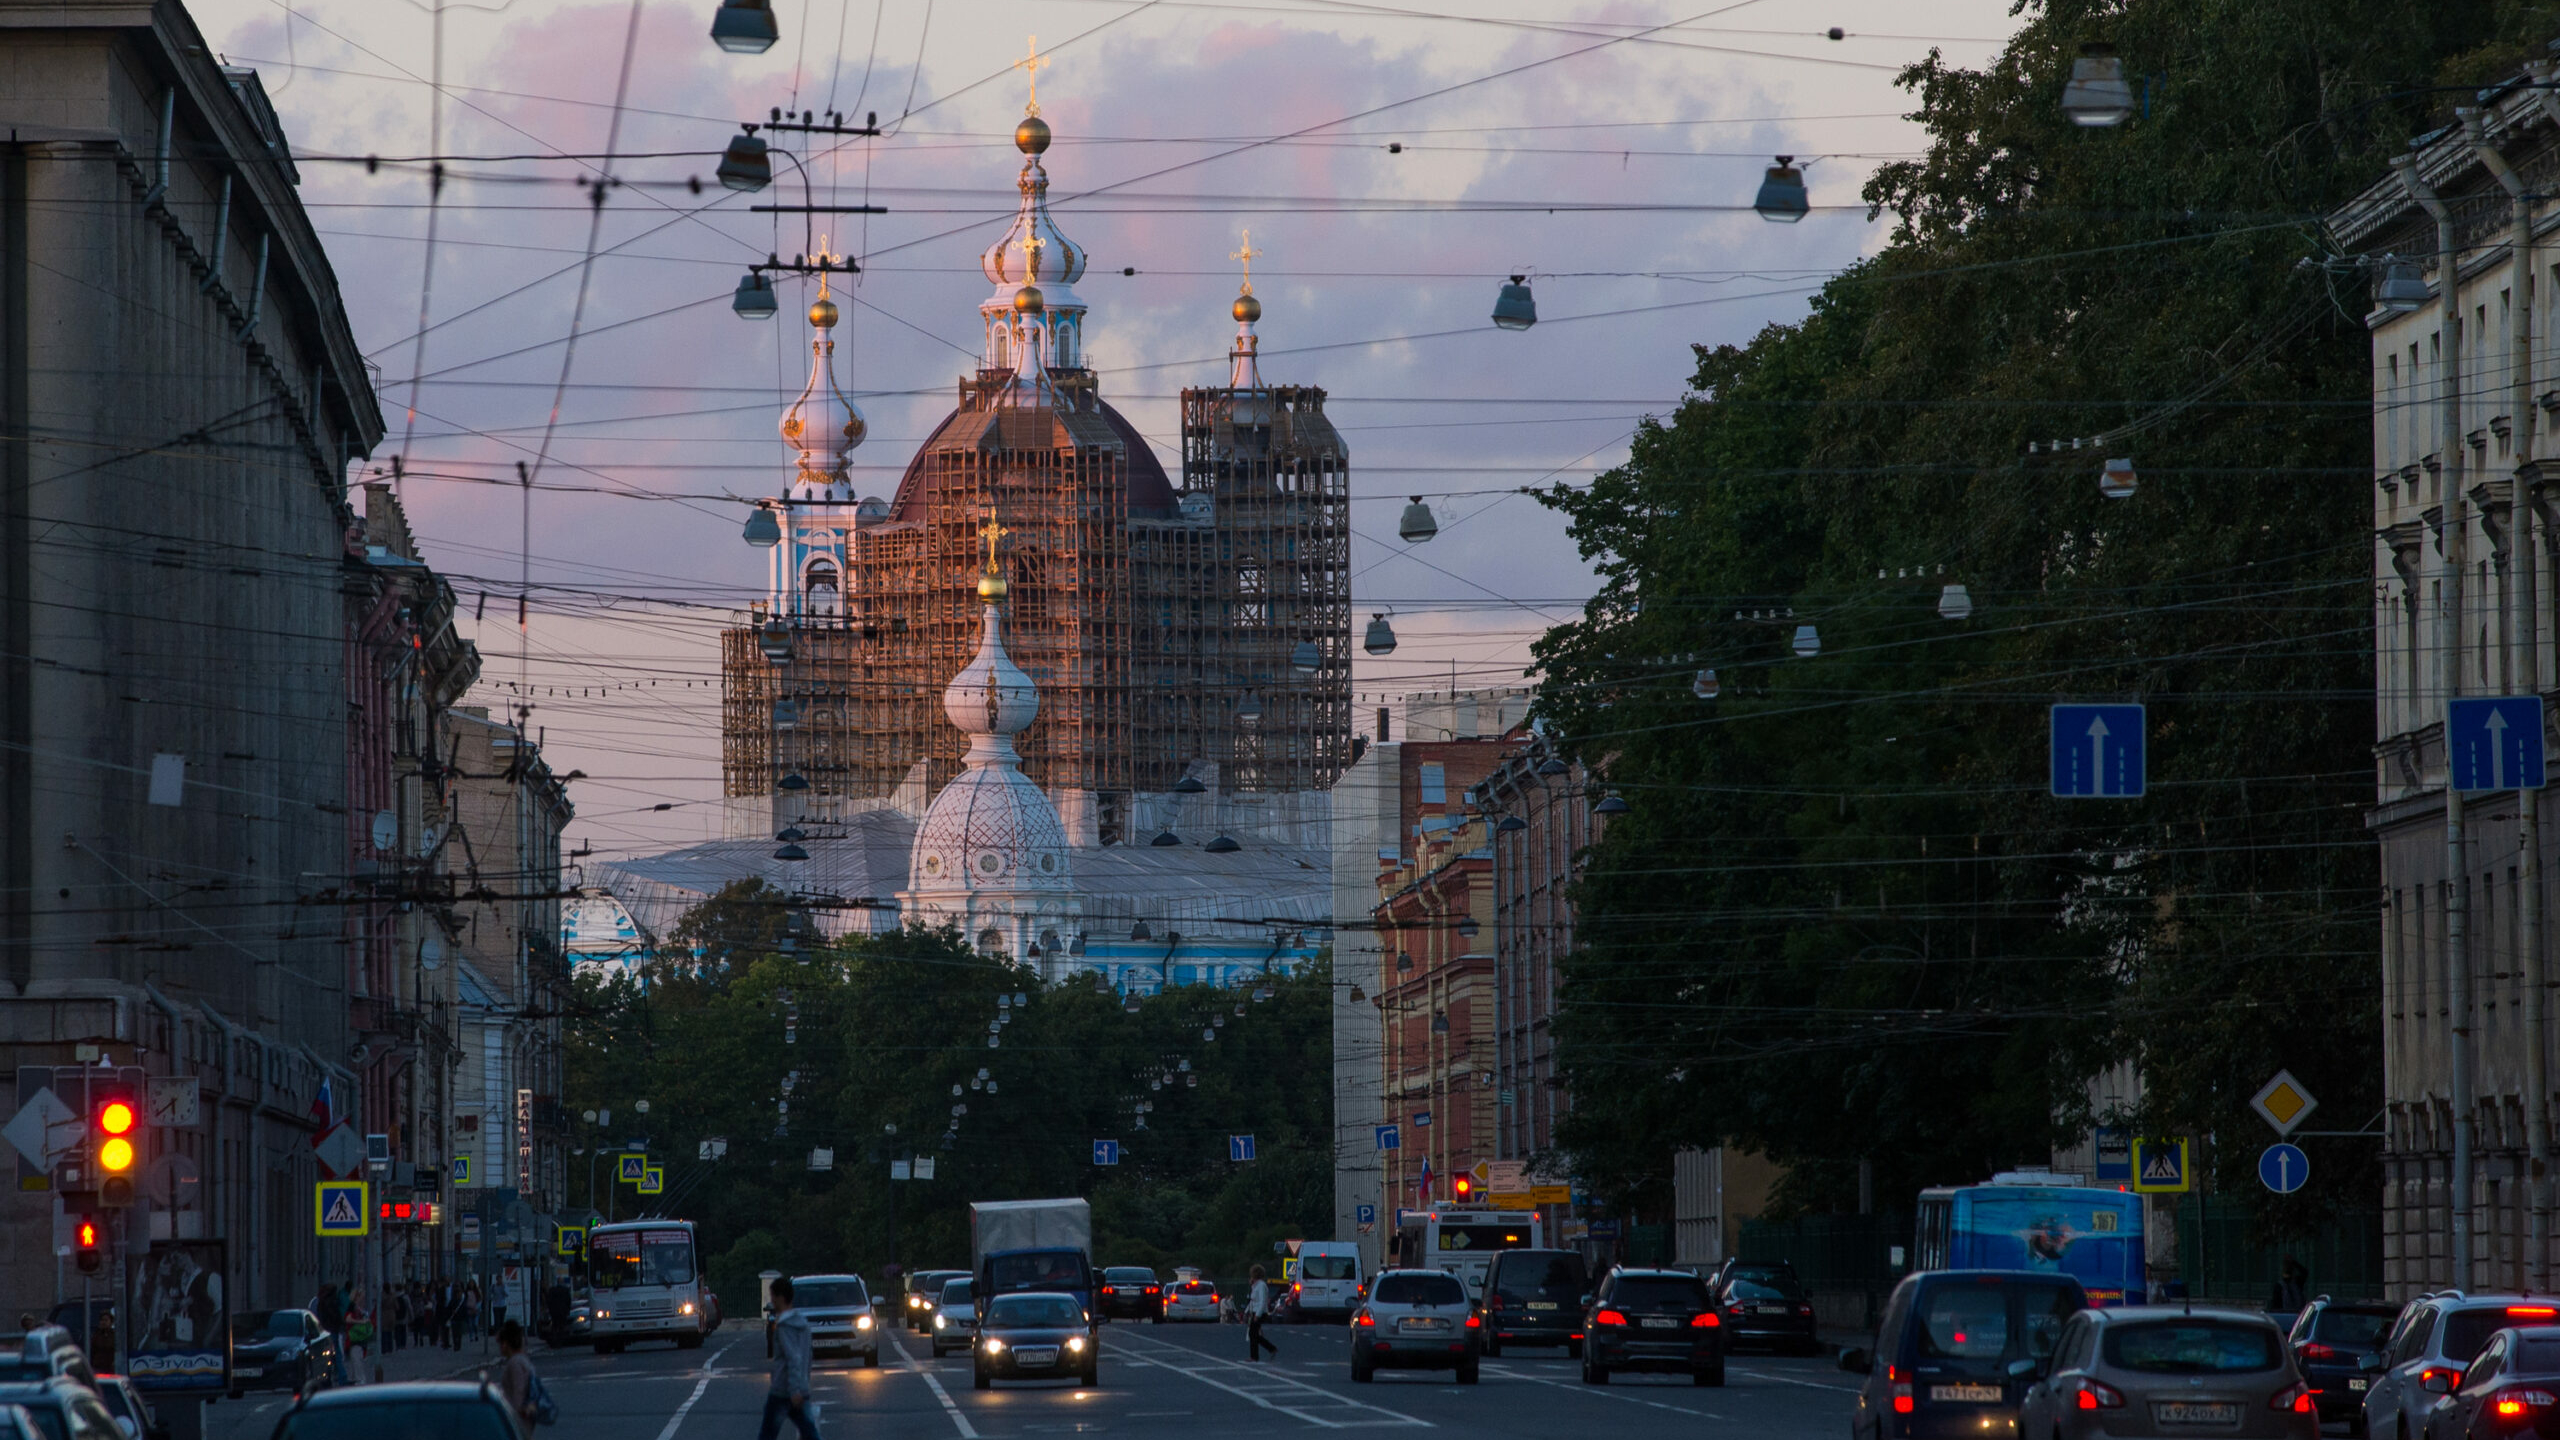 На заседании Экспертного совета Петербурга обсудили строительство колокольни Смольного собора по задумке Растрелли